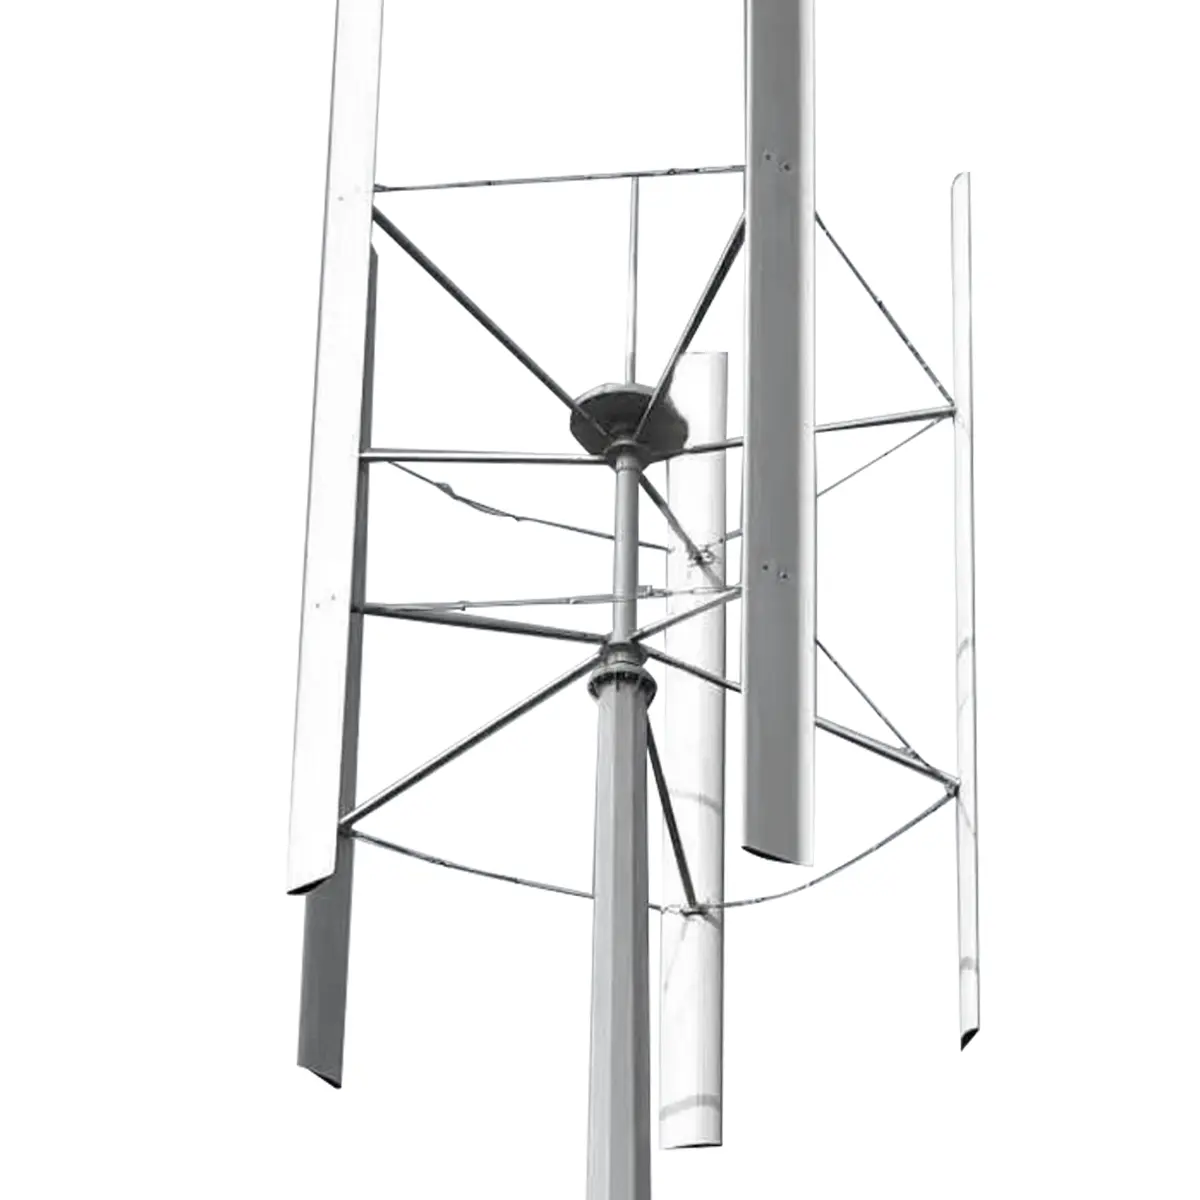 Buena turbina de viento vertical de torre hidráulica de control de paso de sistema solar residencial portátil